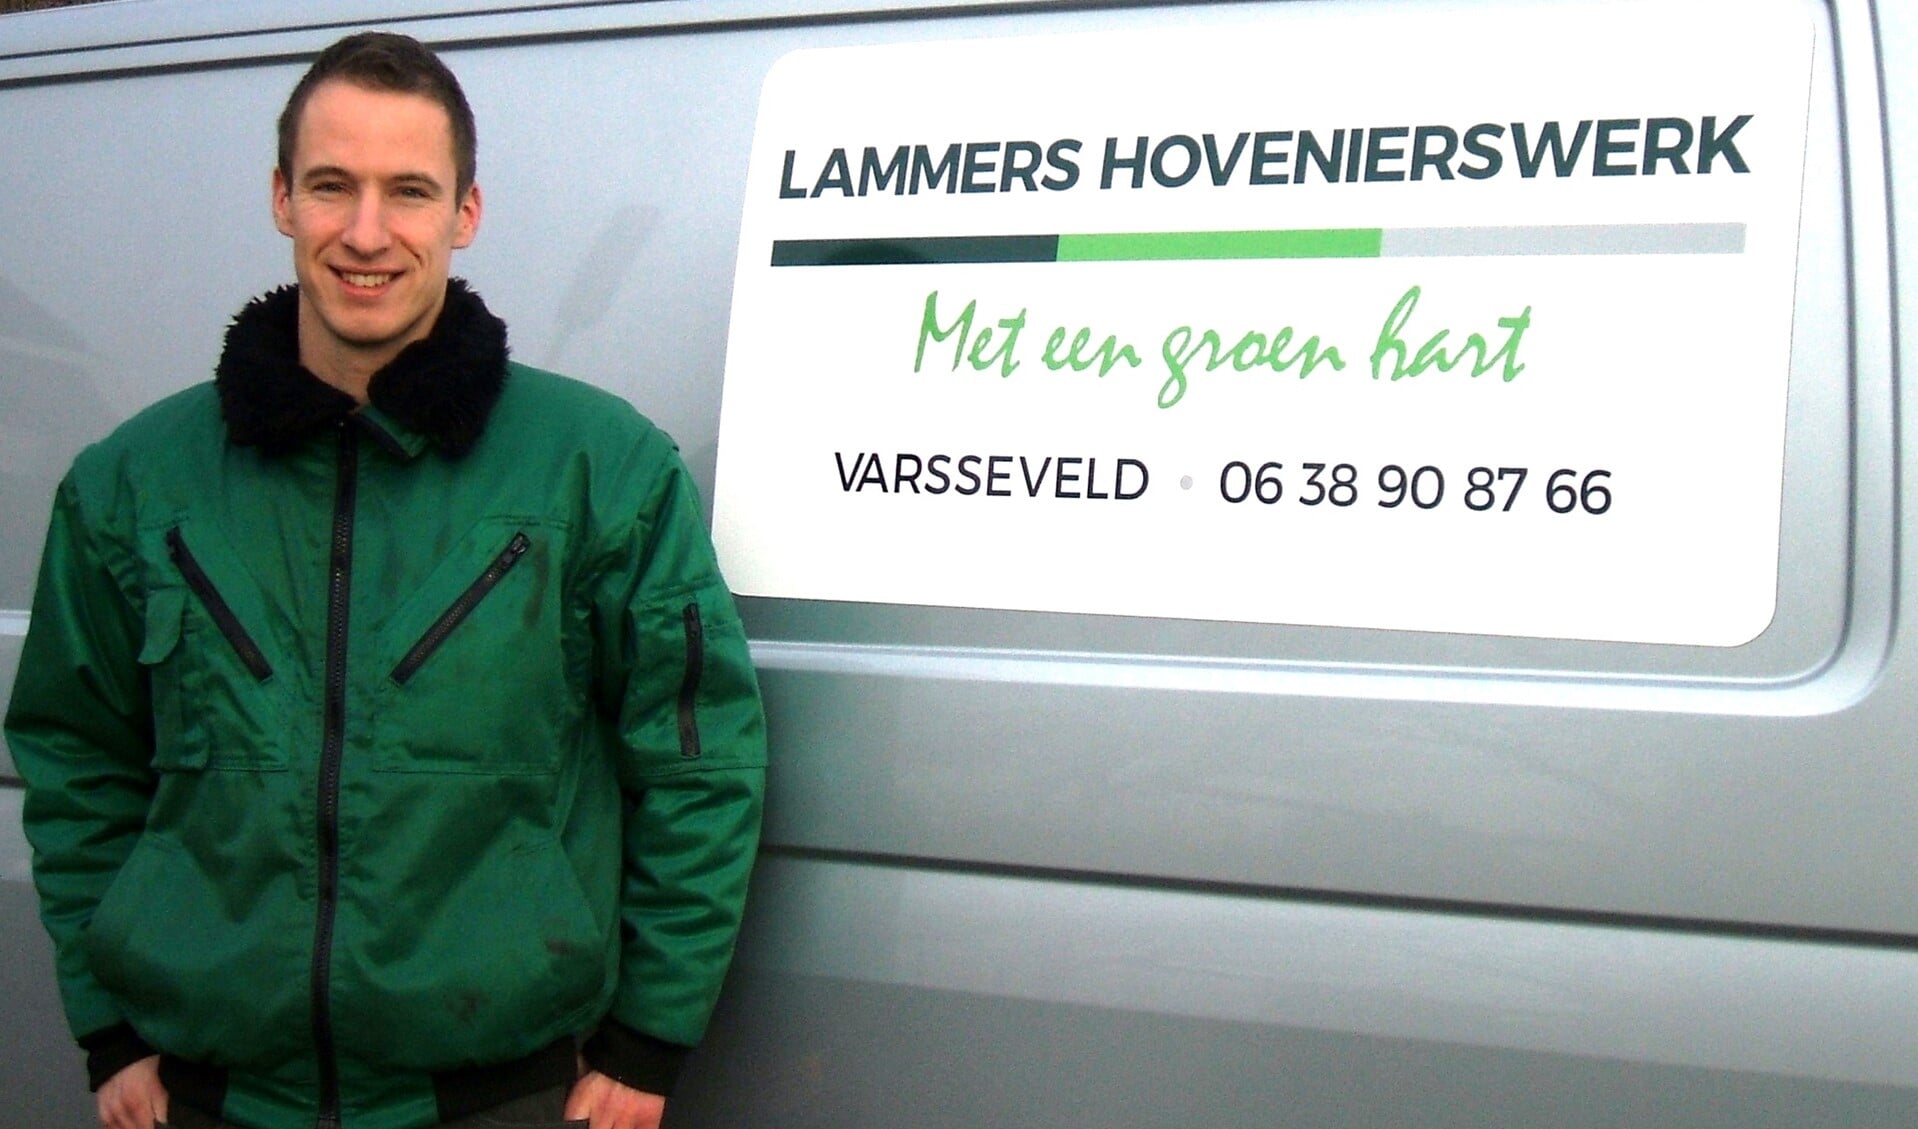 Hovenier Erwin Lammers voor zijn bedrijfsbus. Foto: Reinier Kroesen